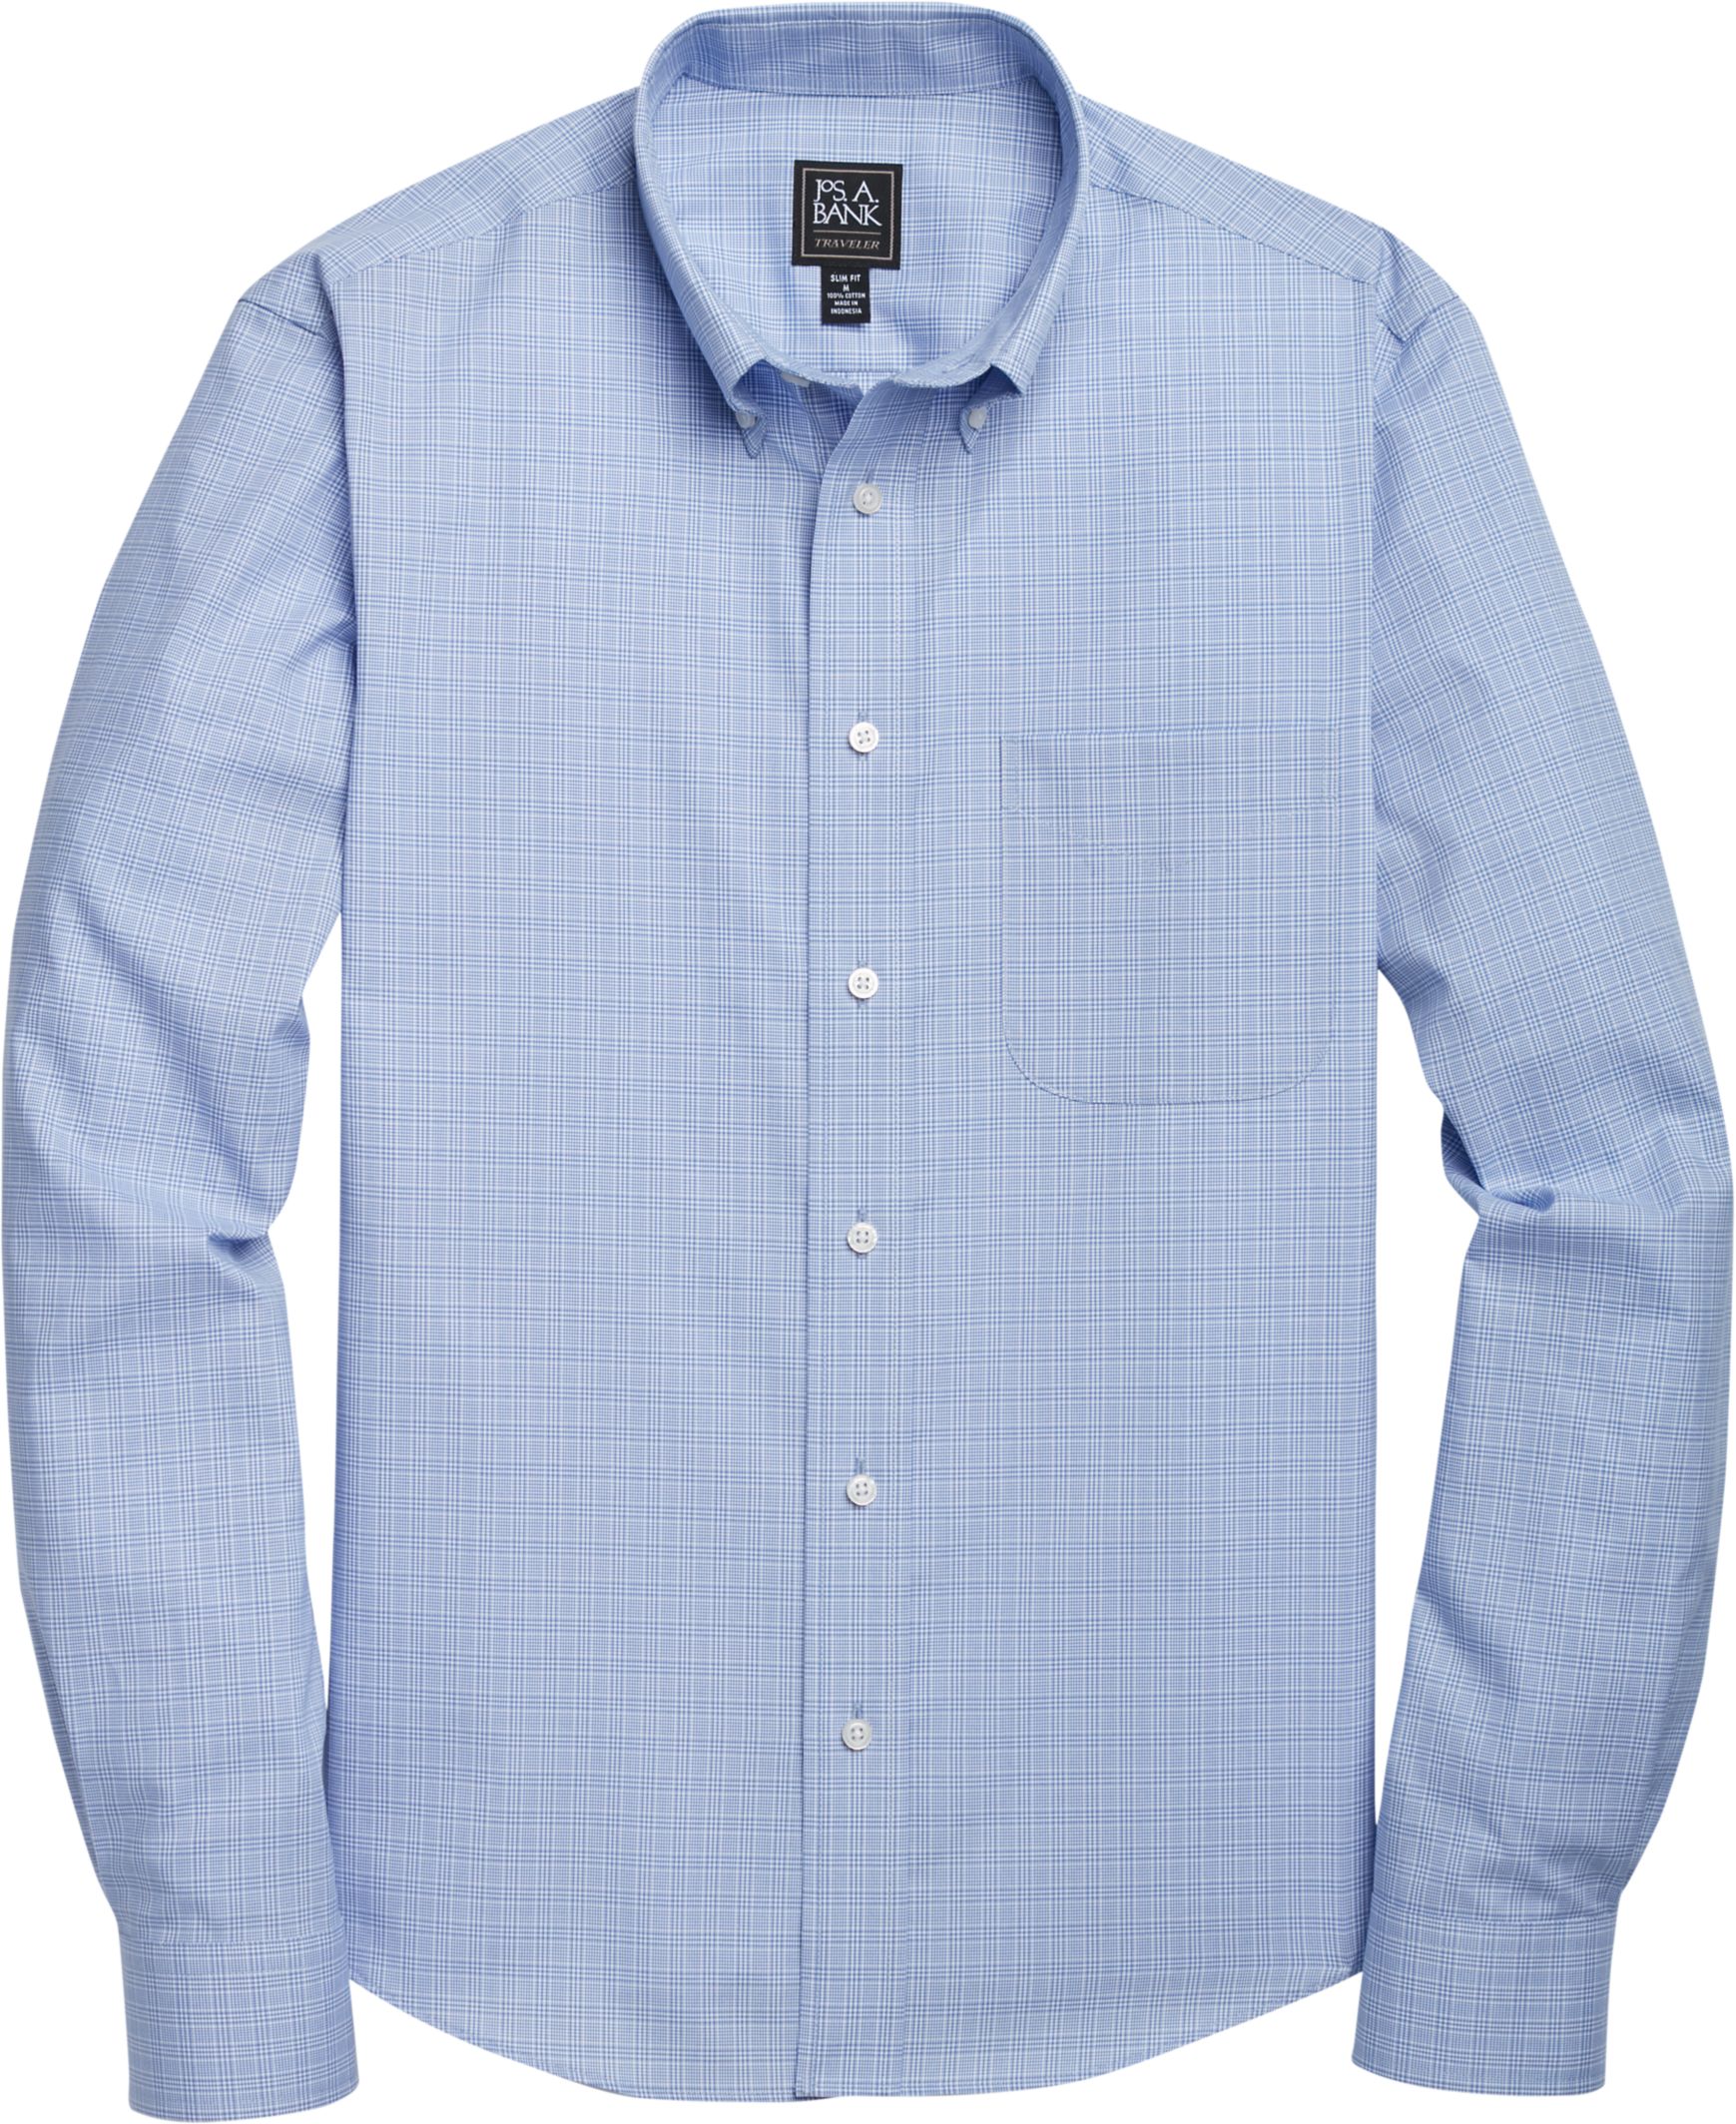 light blue button down collar shirt